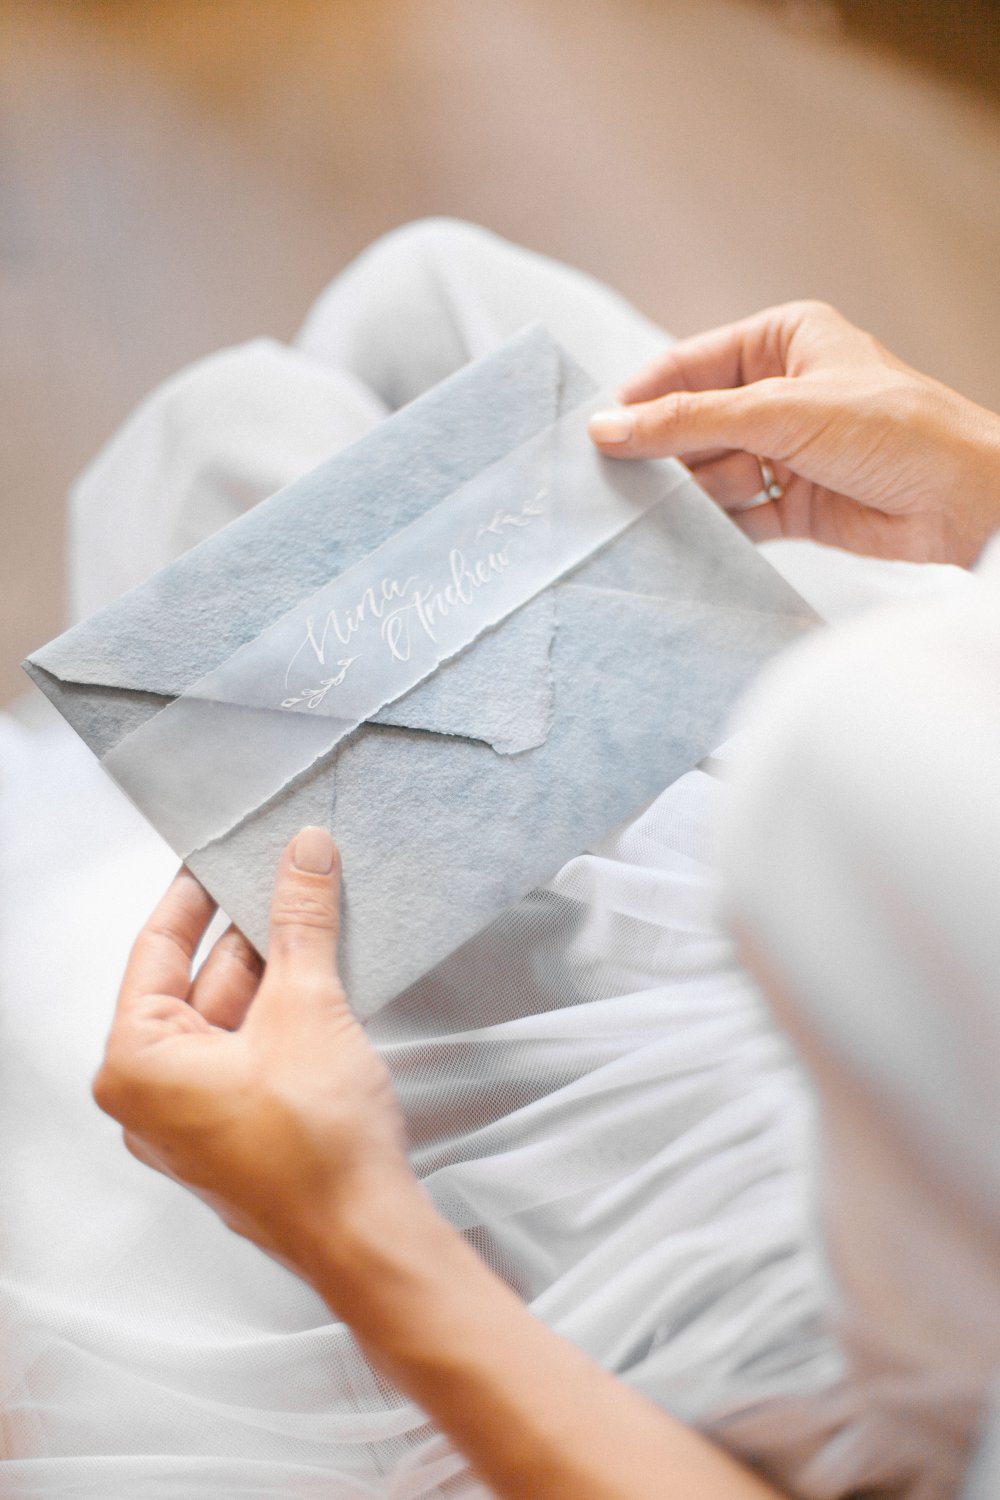 Конверт из бумаги ручного литья для свадебных приглашений. Свадьба в Черногории. Акцент в виде ленты из кальки с именами пары, написанными каллиграфией.